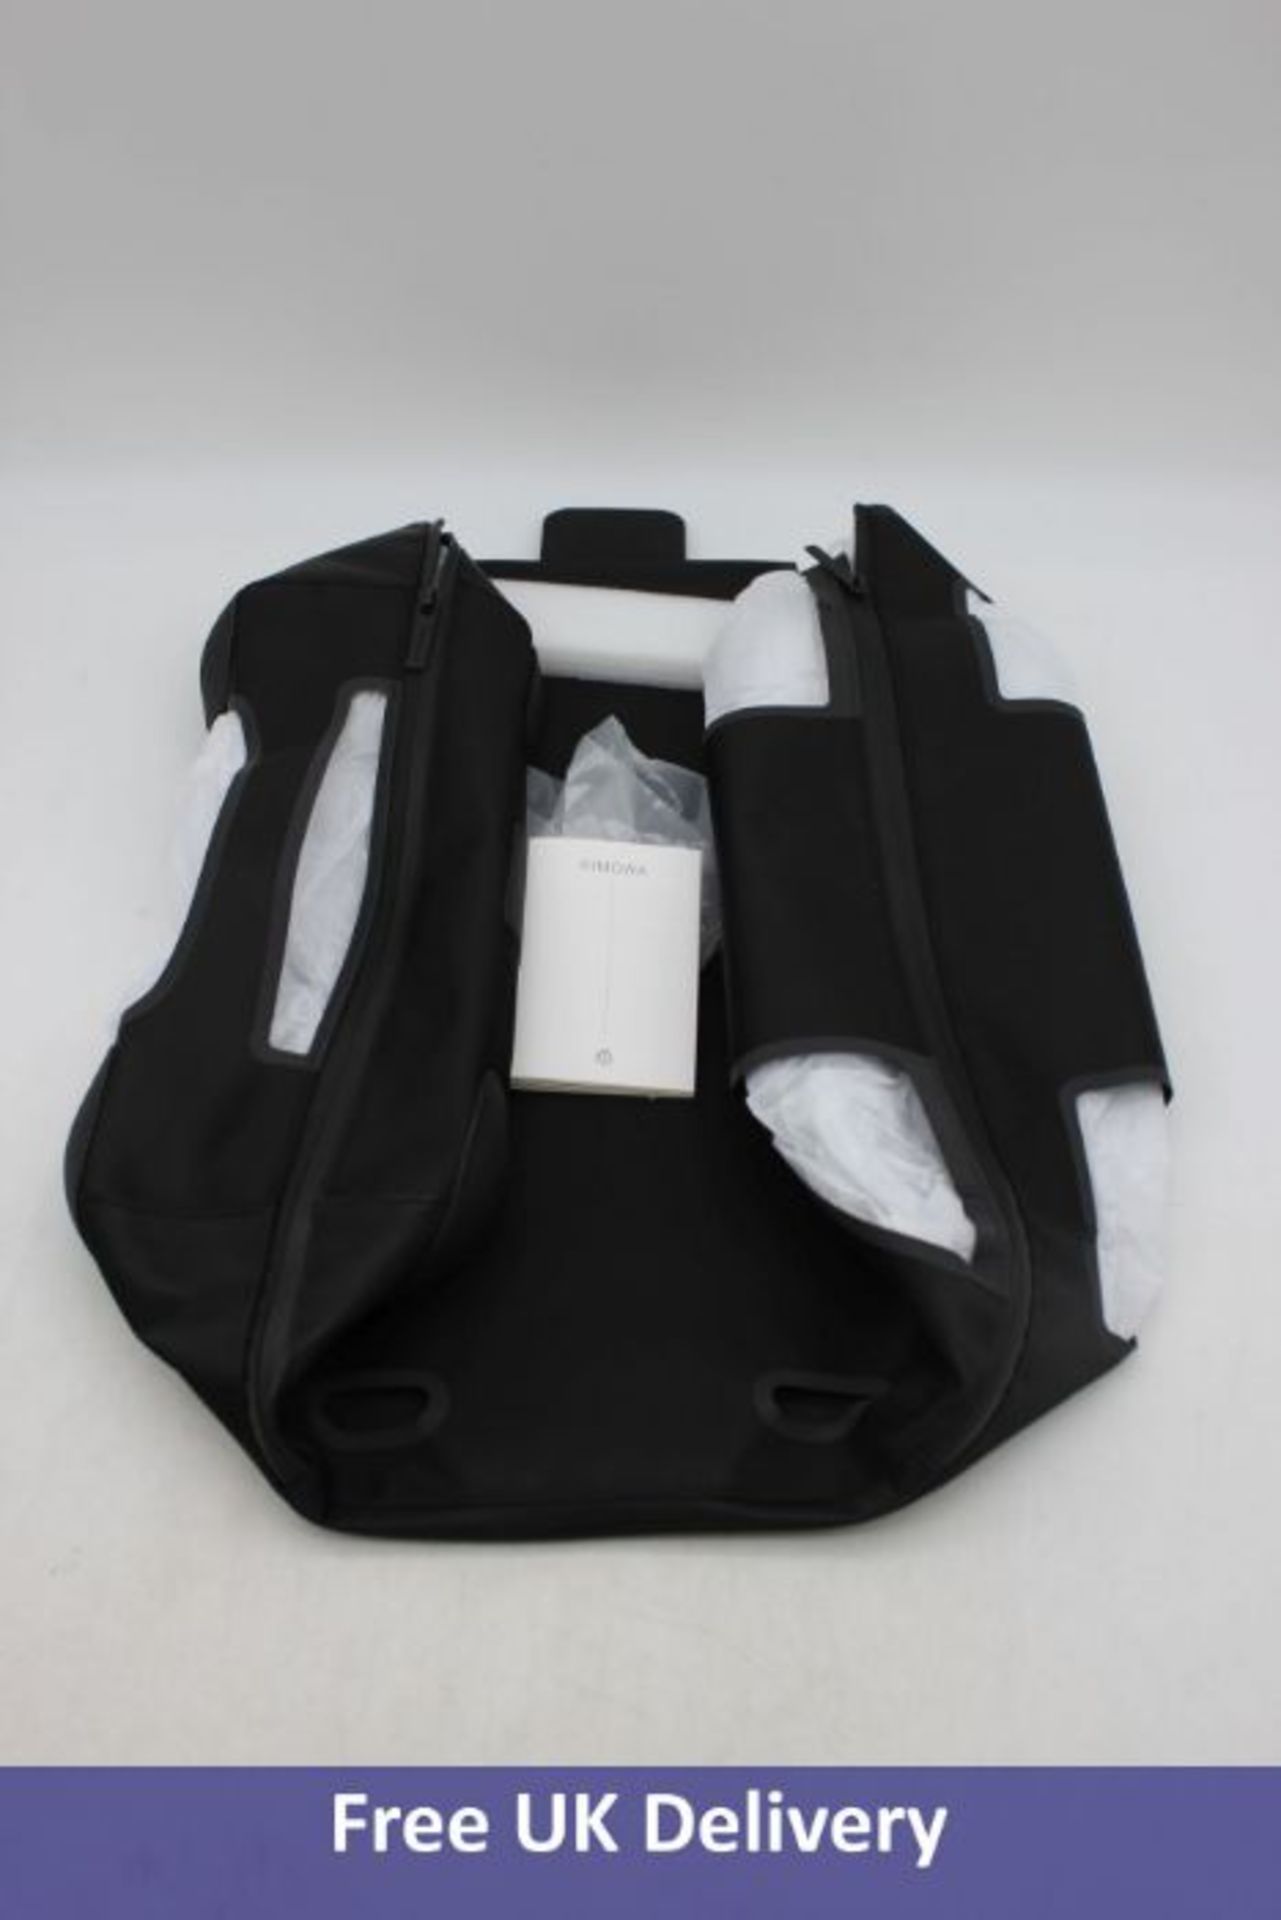 Rimowa Cabin Suit Case Cover, Black, Size 53A